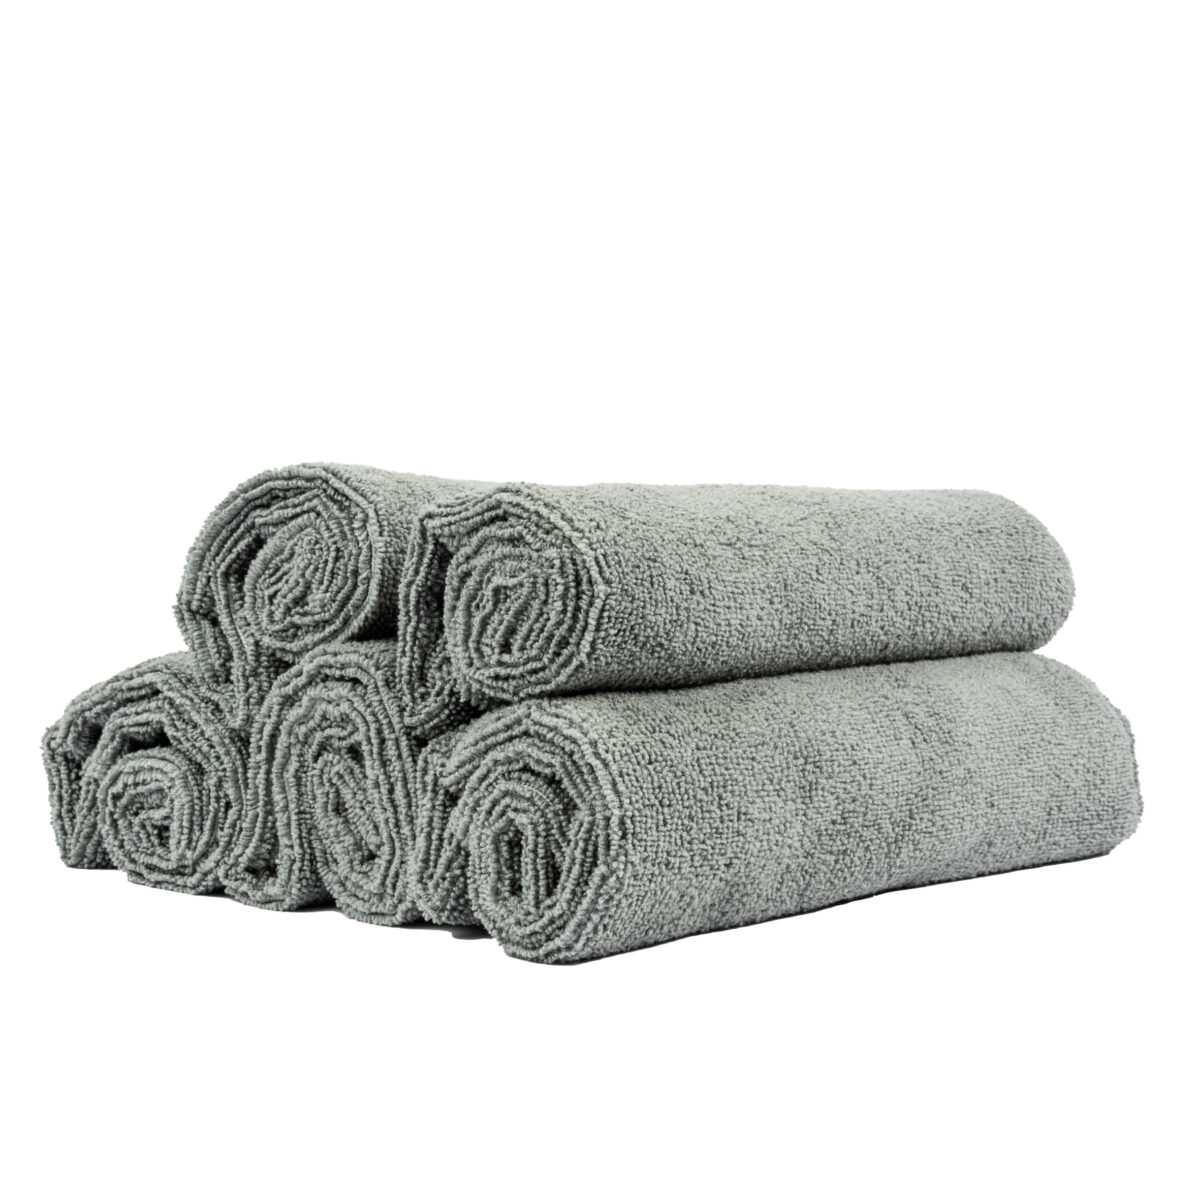 Edgeless multi purpose towel grey